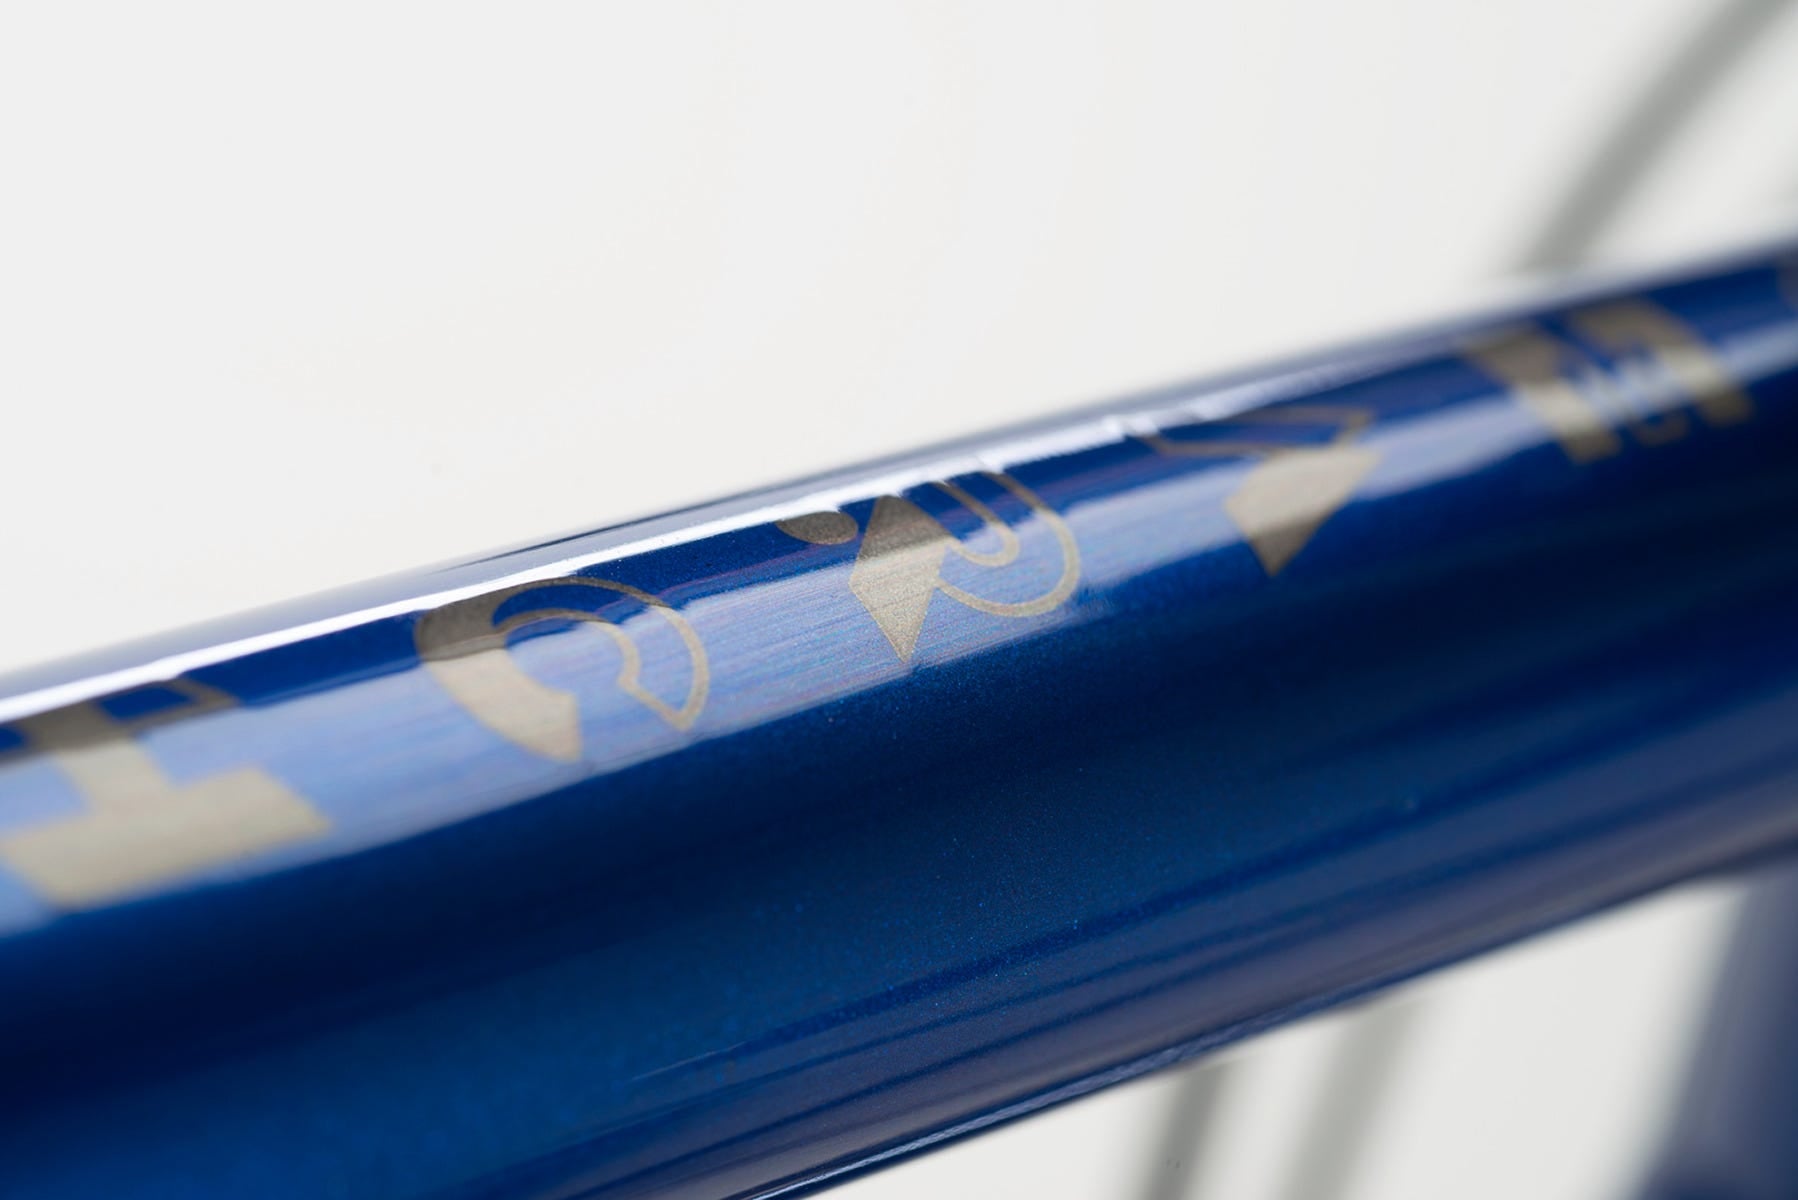 norco-gravel-bike-search-xr-s2-steel-blue